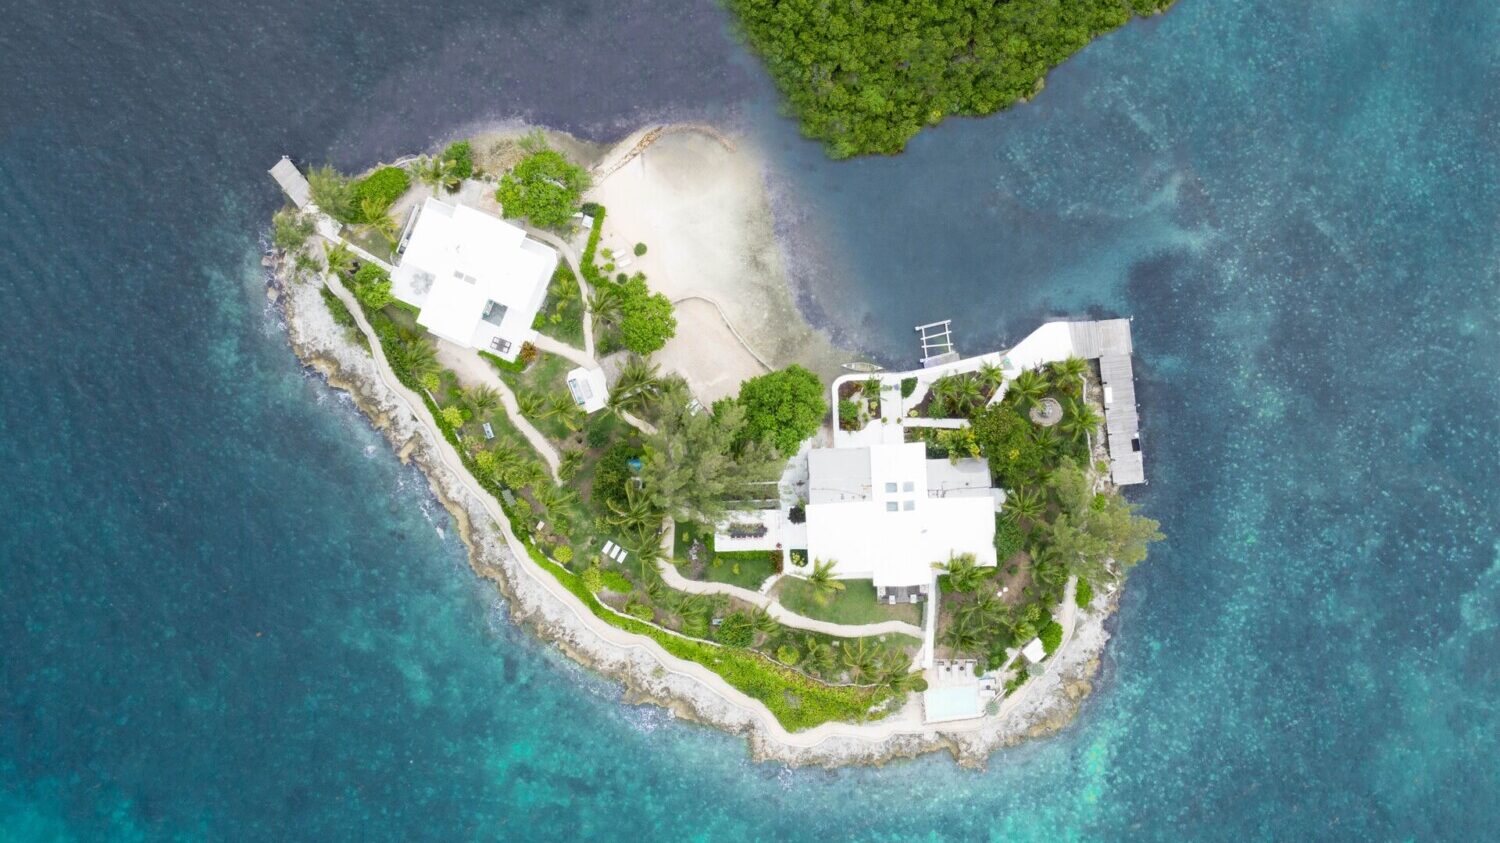 马尔代夫芭环礁四季私人岛屿预订及价格查询,Four Seasons Private Island Maldives At Voavah_八大洲旅游